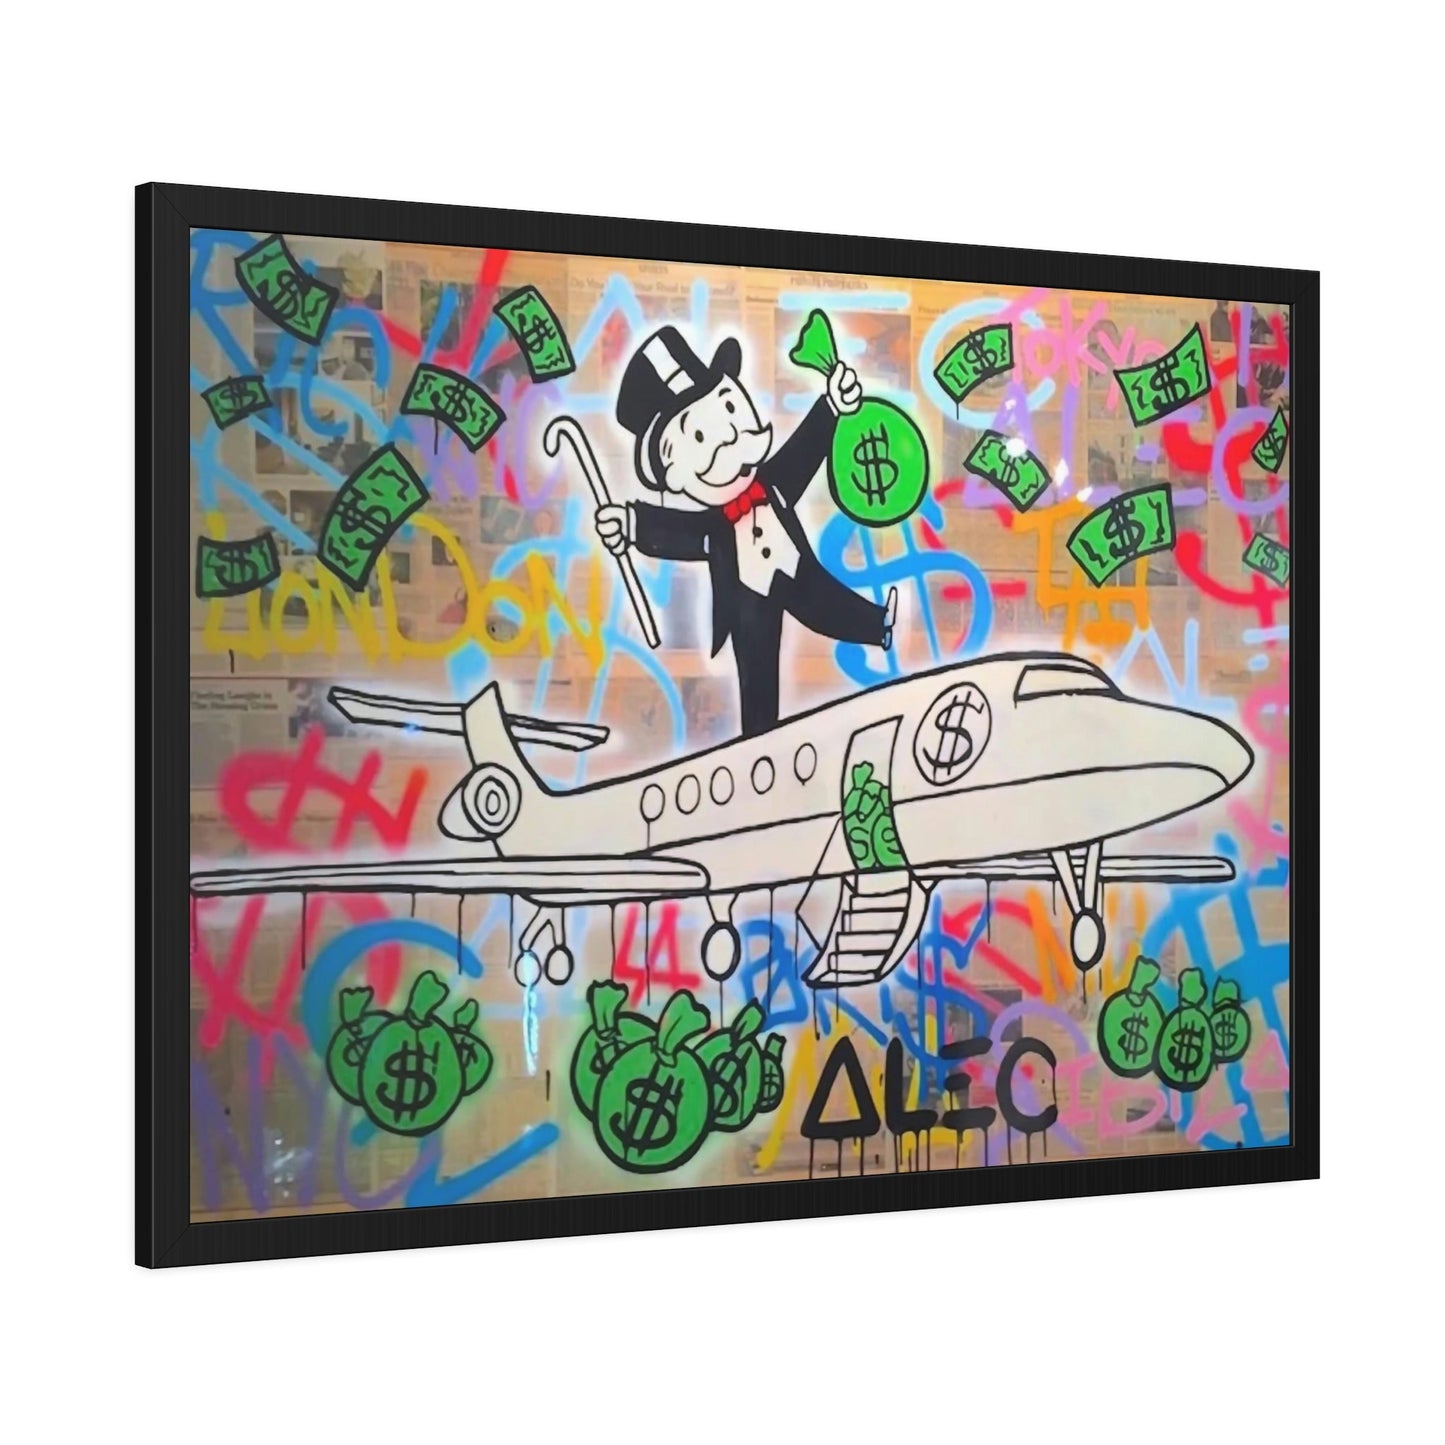 Unique Money Art: Alec Monopoly's Canvas Art and Poster Prints